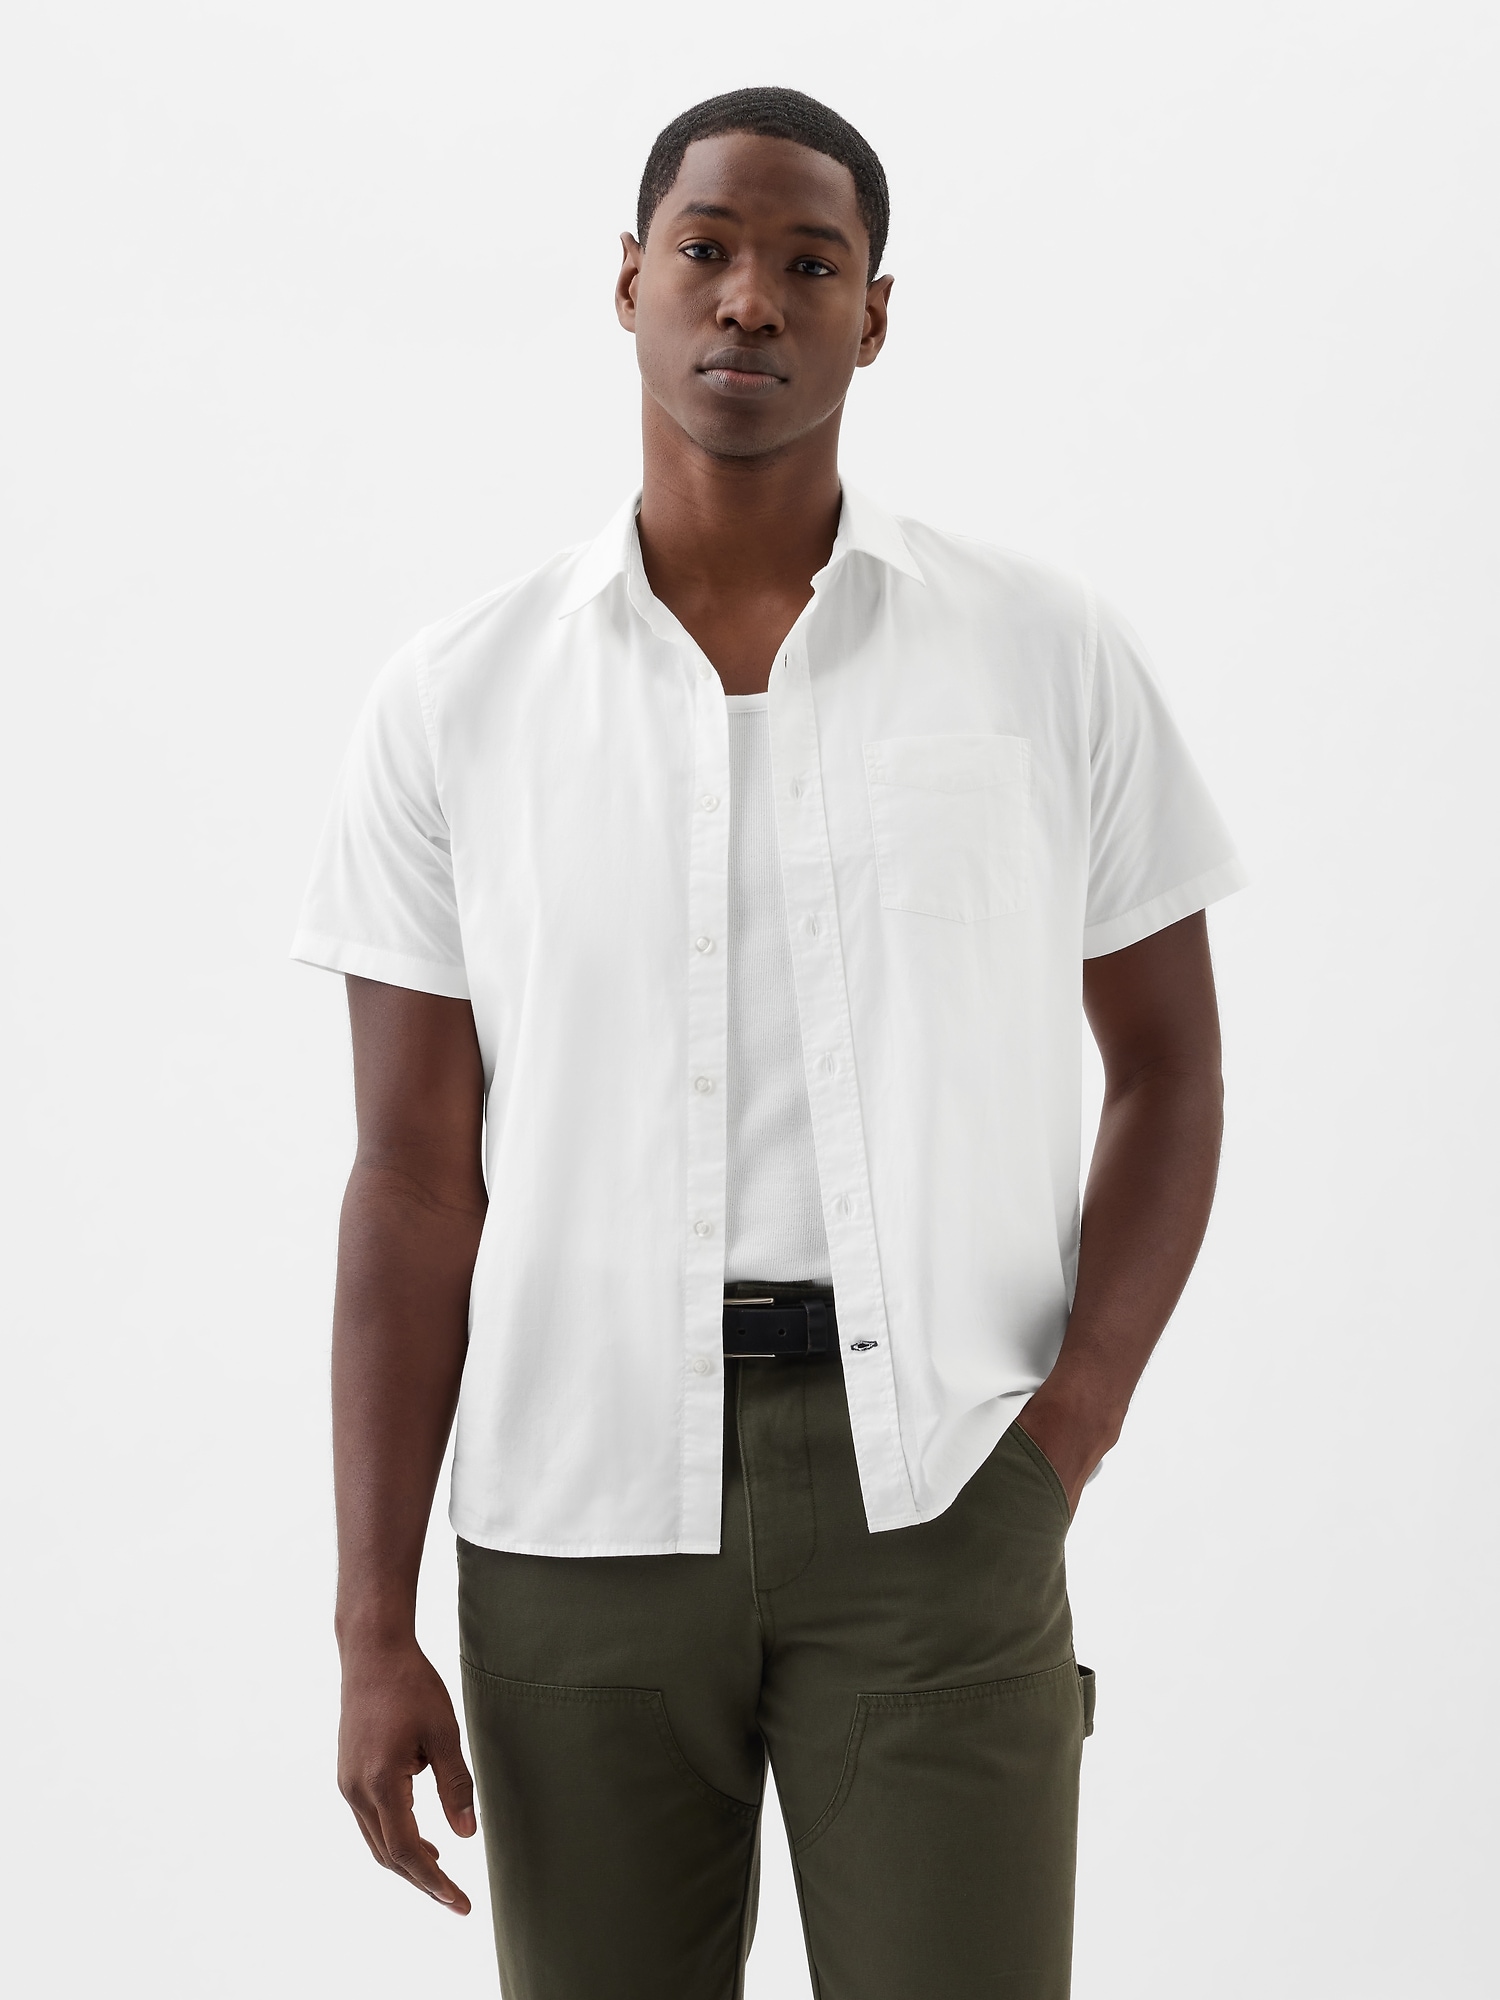 GAP Cotton shirt standard - Men's